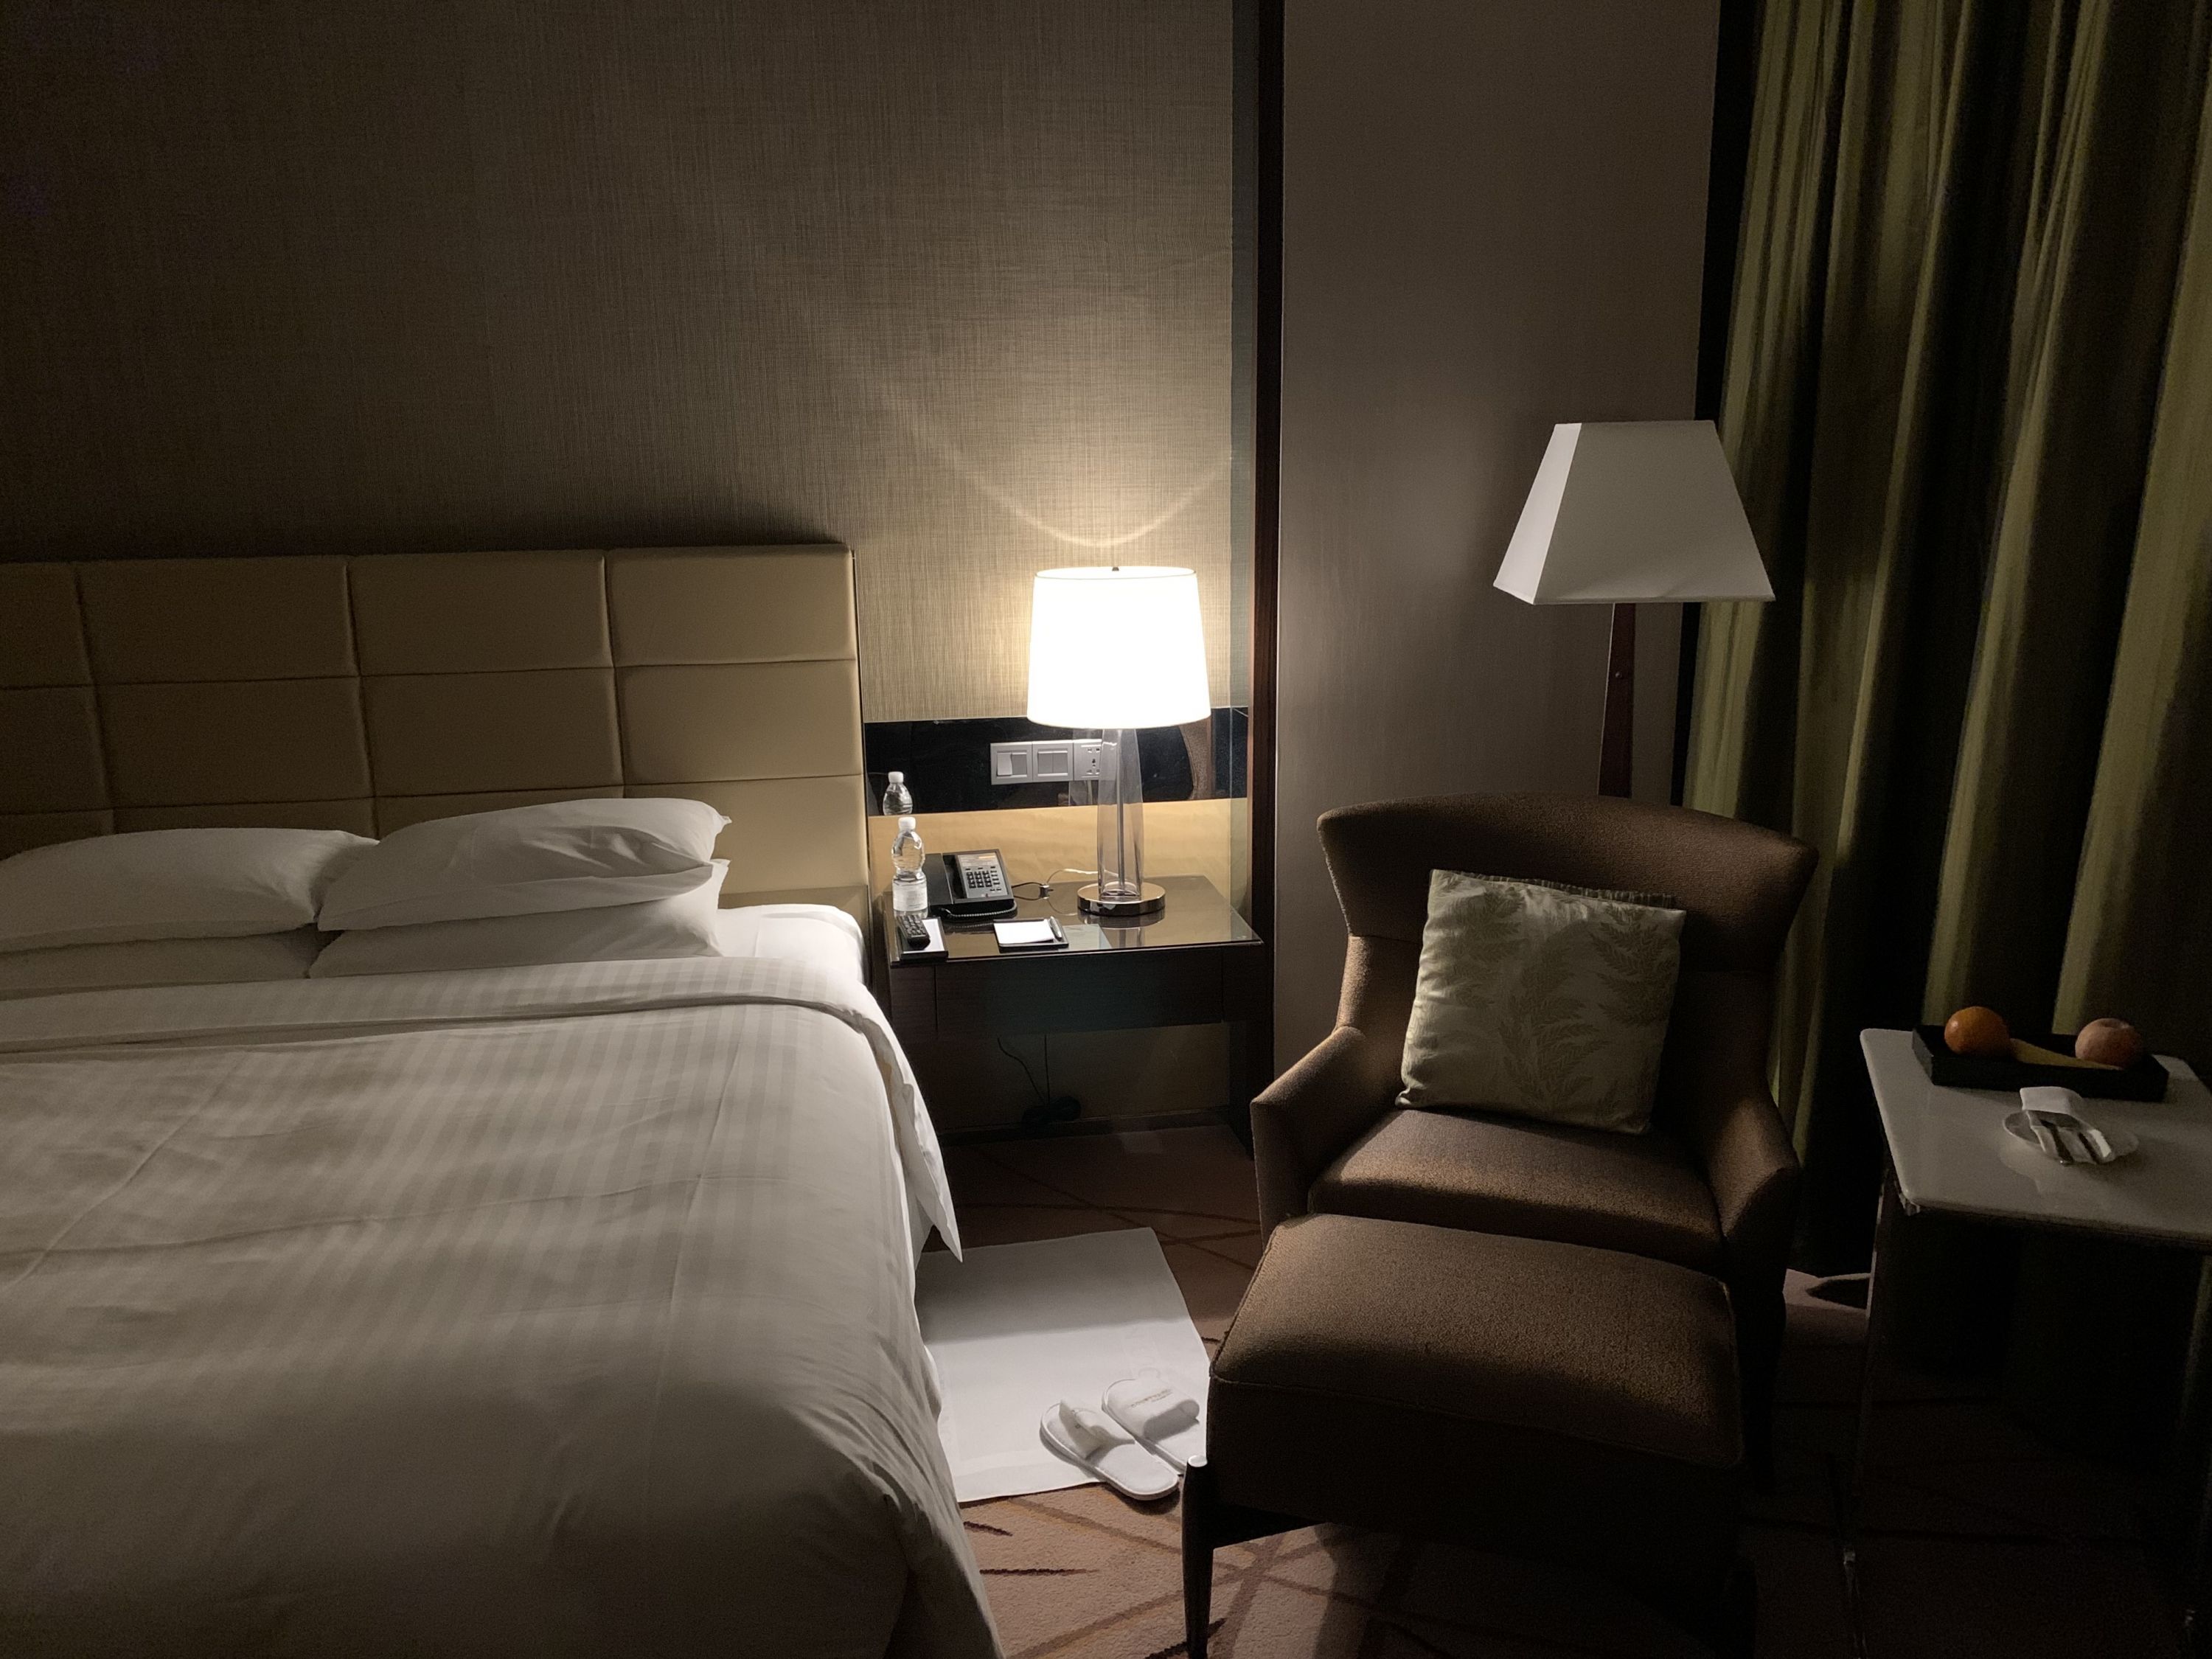 旅馆照片房间图片晚上图片